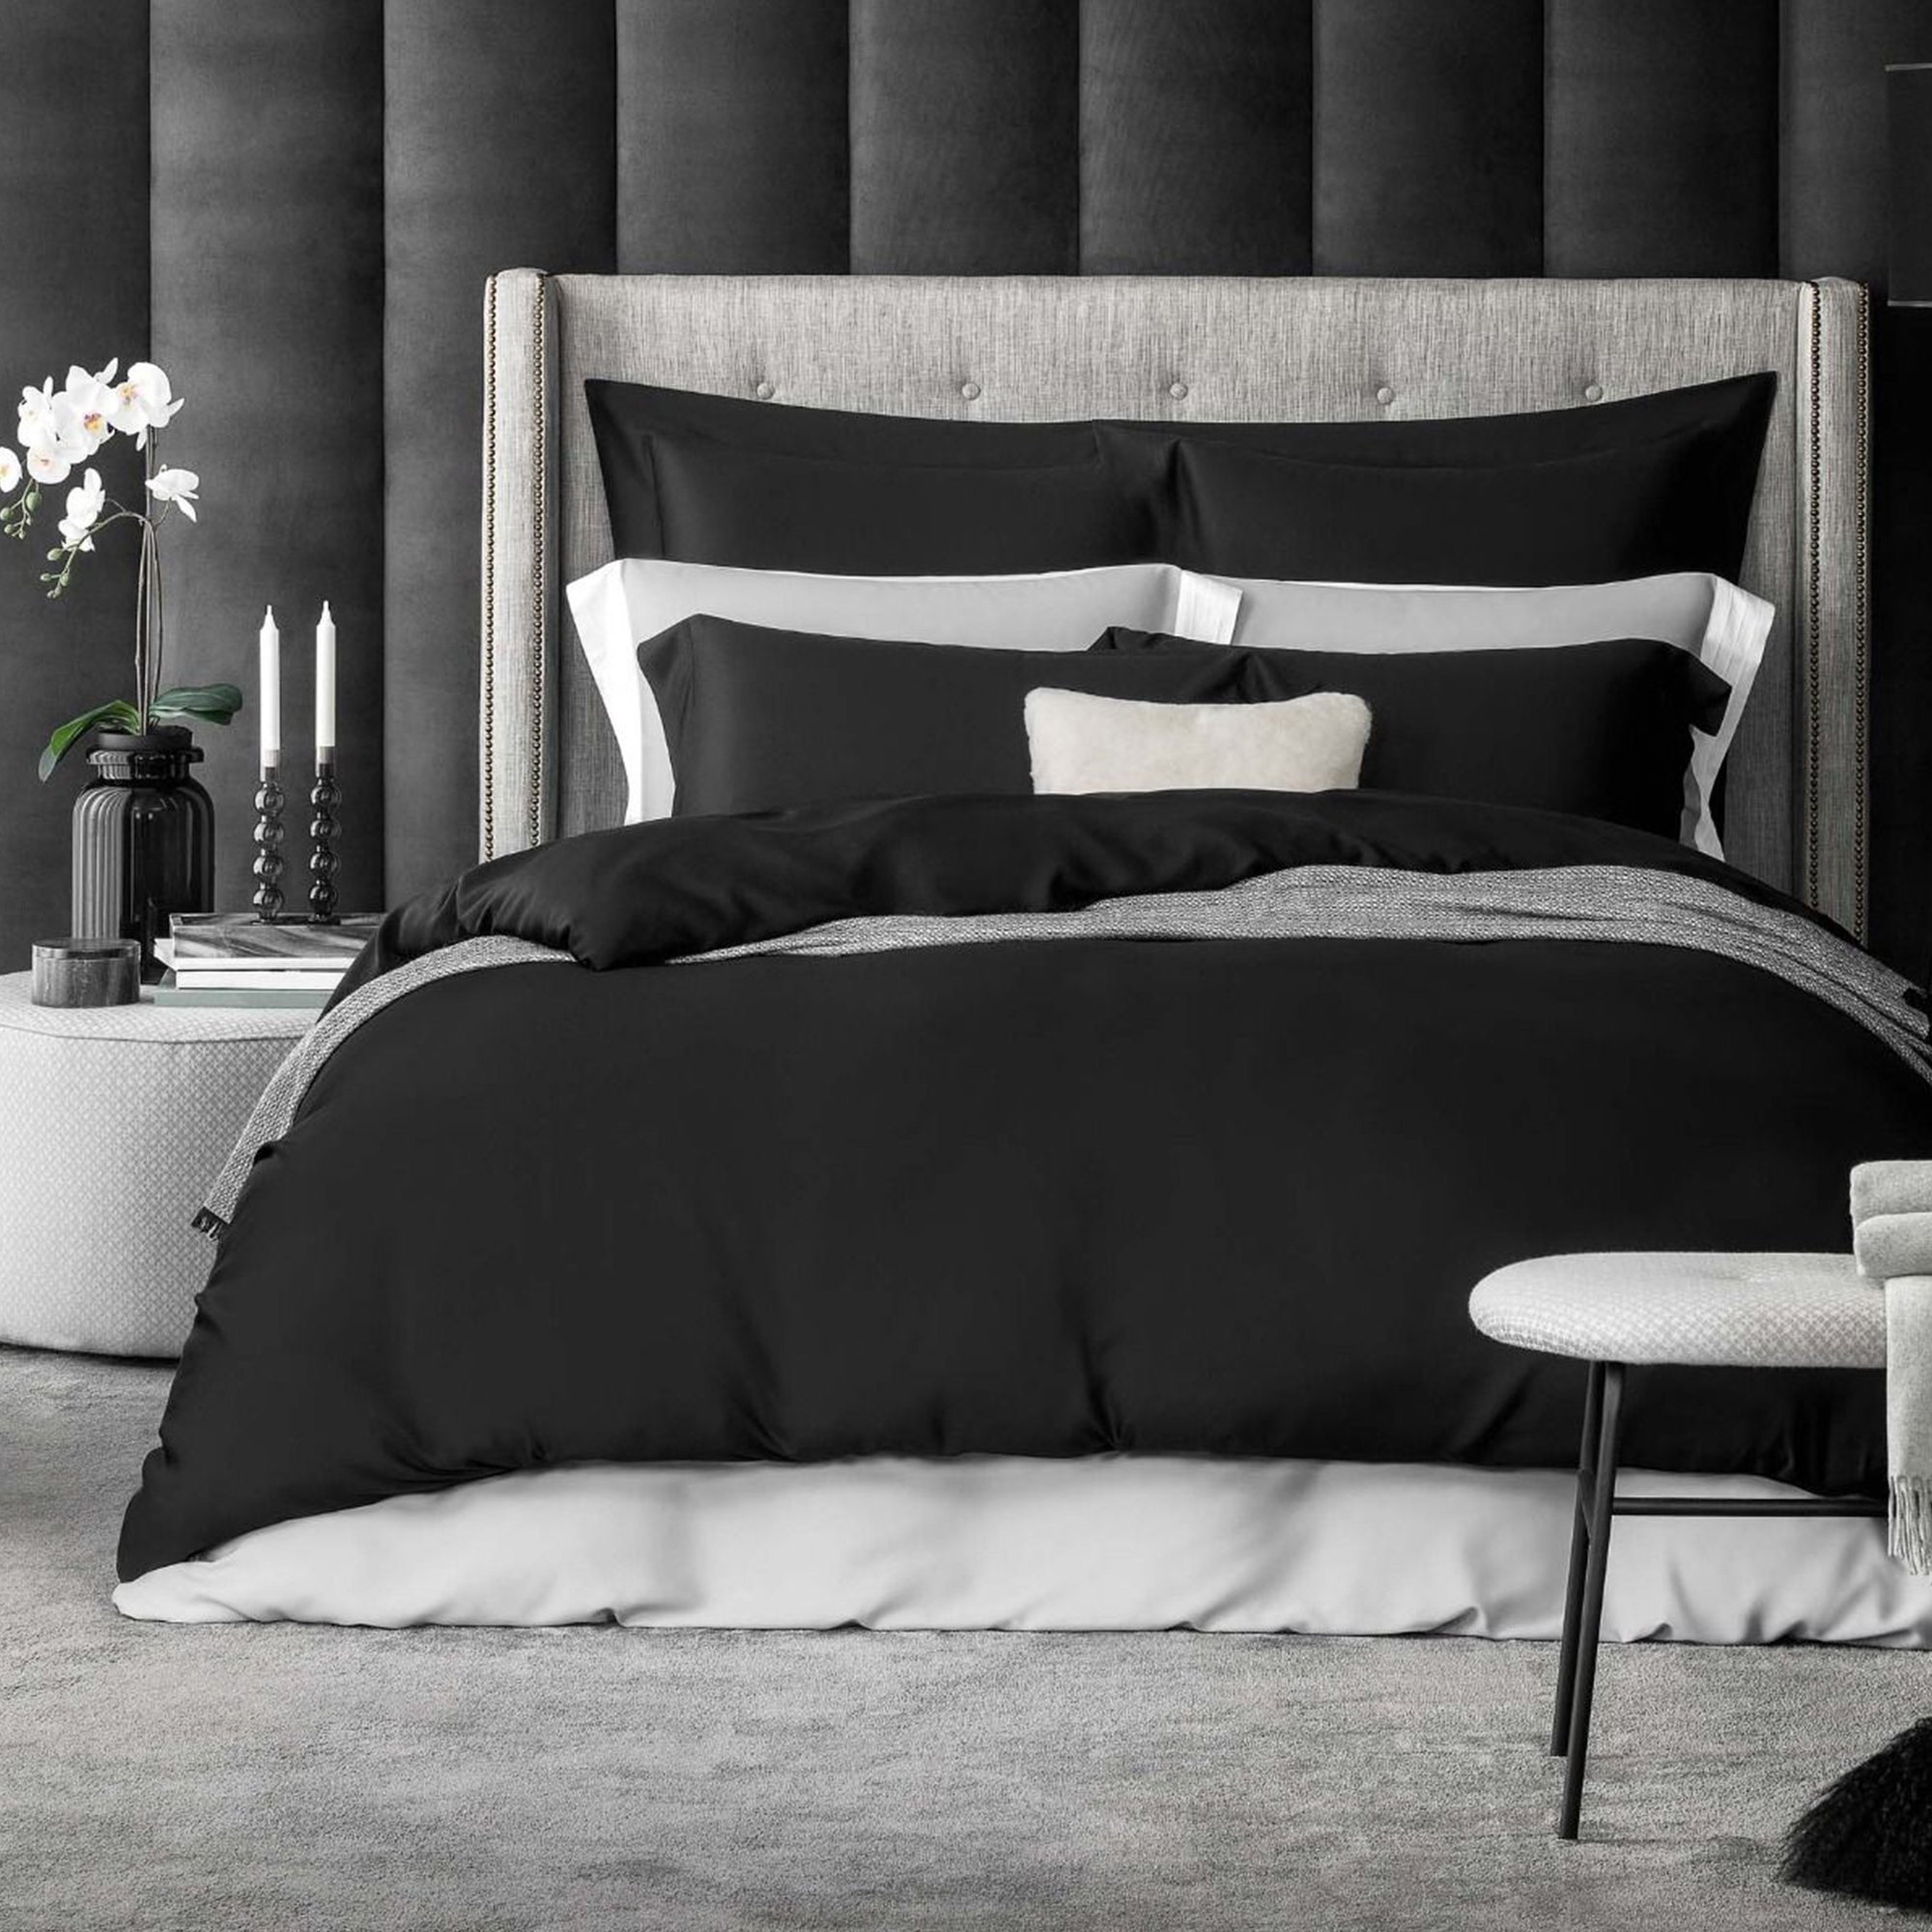 Комплект постельного белья Togas Сенса черный Полуторный комплект постельного белья la besse сатин чёрный полуторный